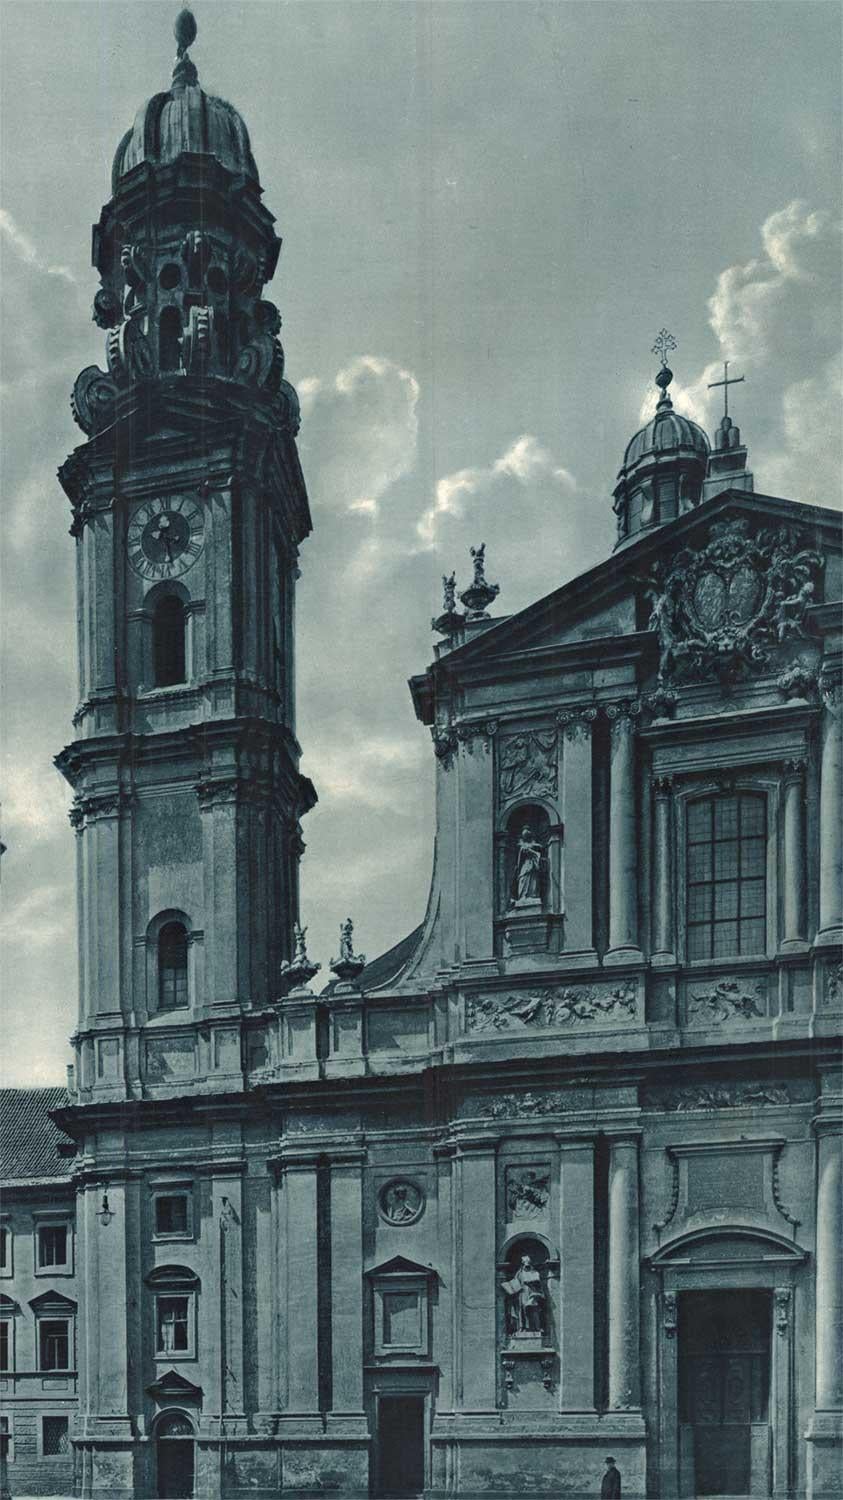 Original German, Theatine Church and Feldhernhalle Munich vintage poster - Print by Unknown